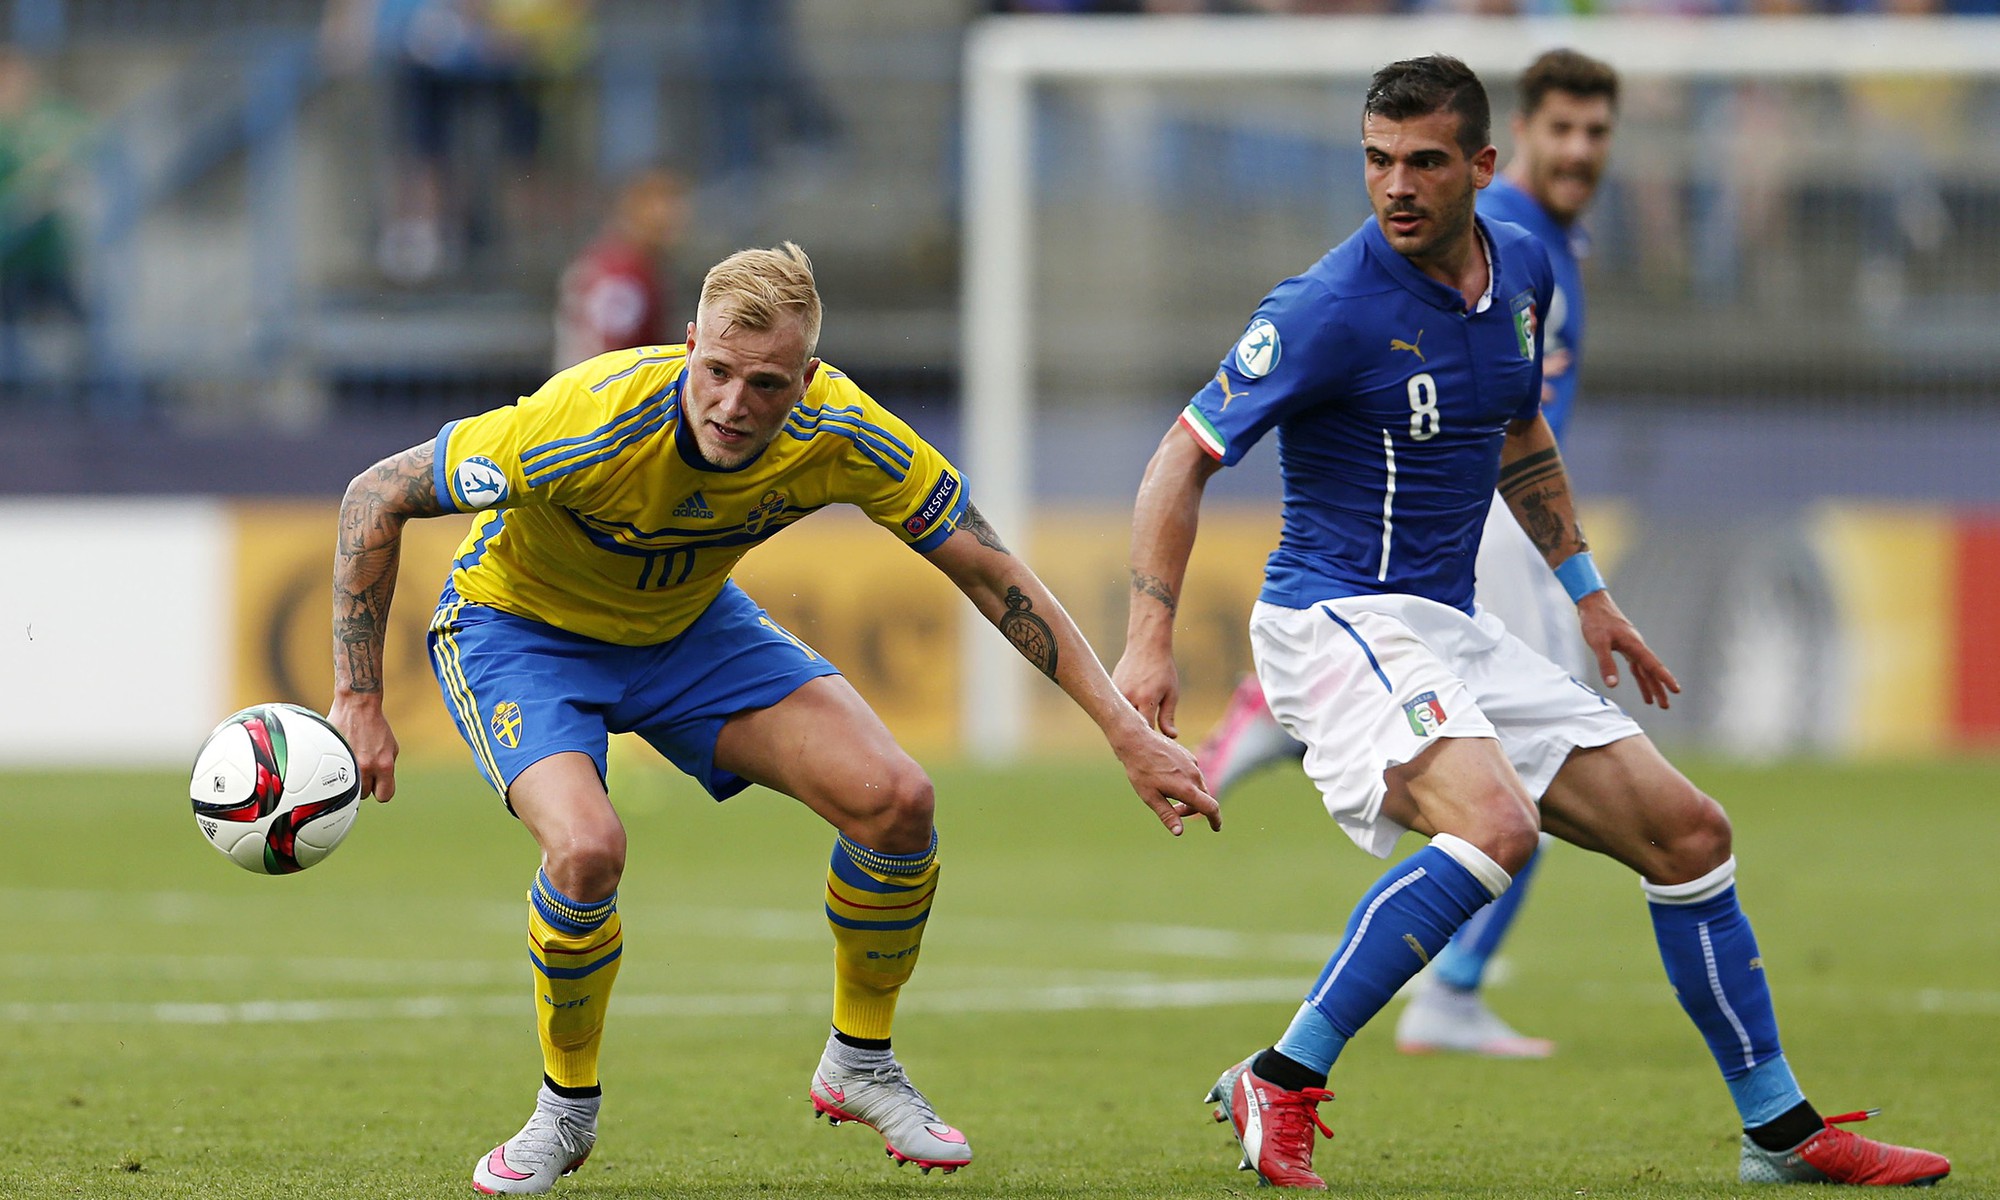 Cuộc đối đầu giữa Italia và Thụy Điển sẽ không quá hấp dẫn và rất sẽ kết thúc với tỷ số hòa.